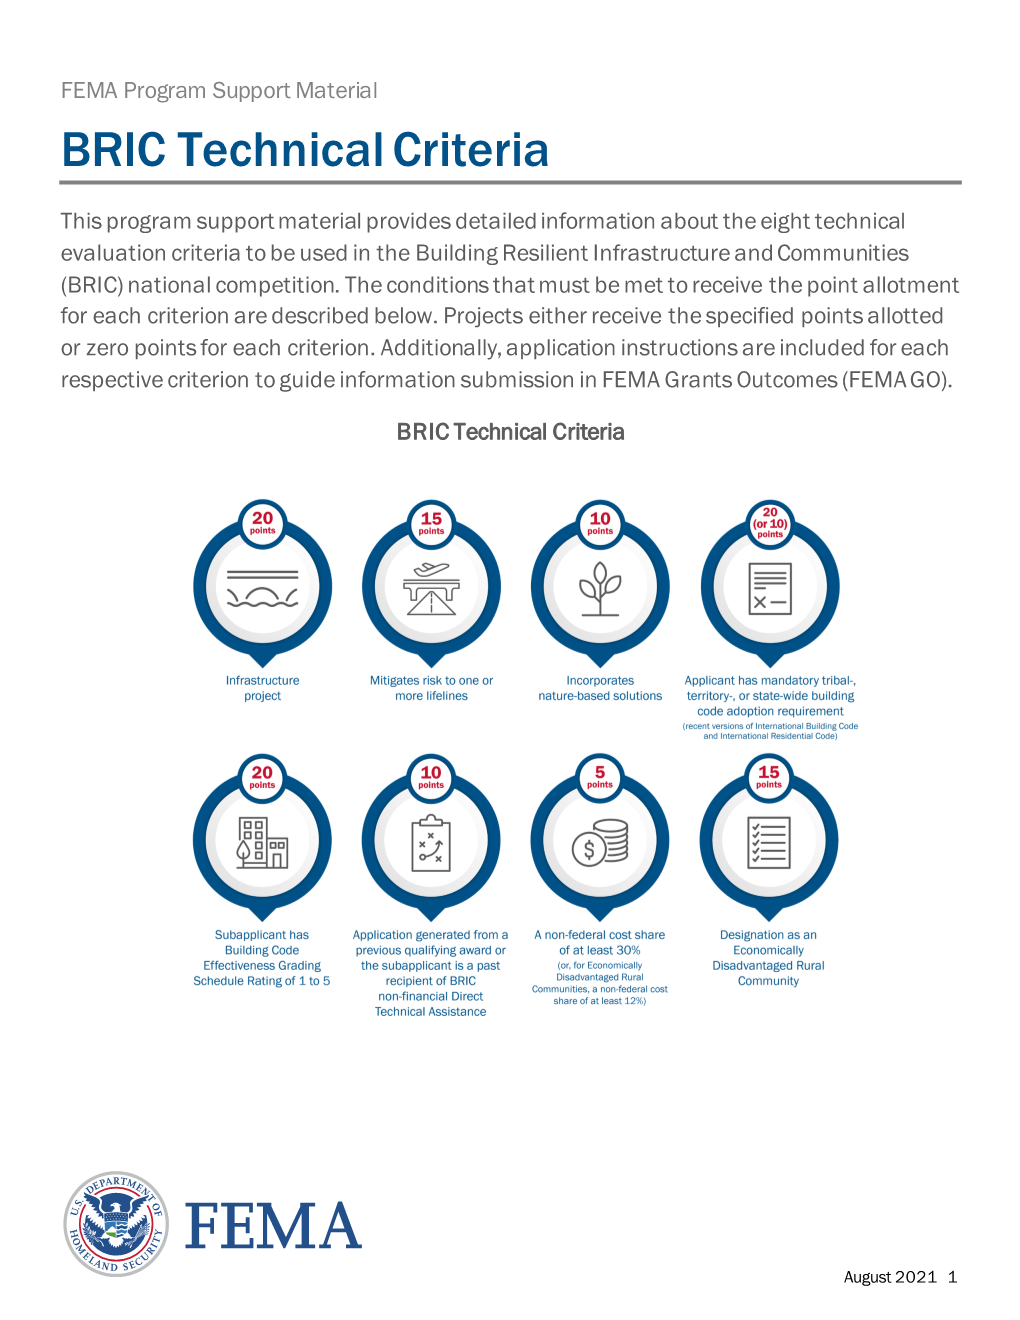 BRIC Technical Criteria